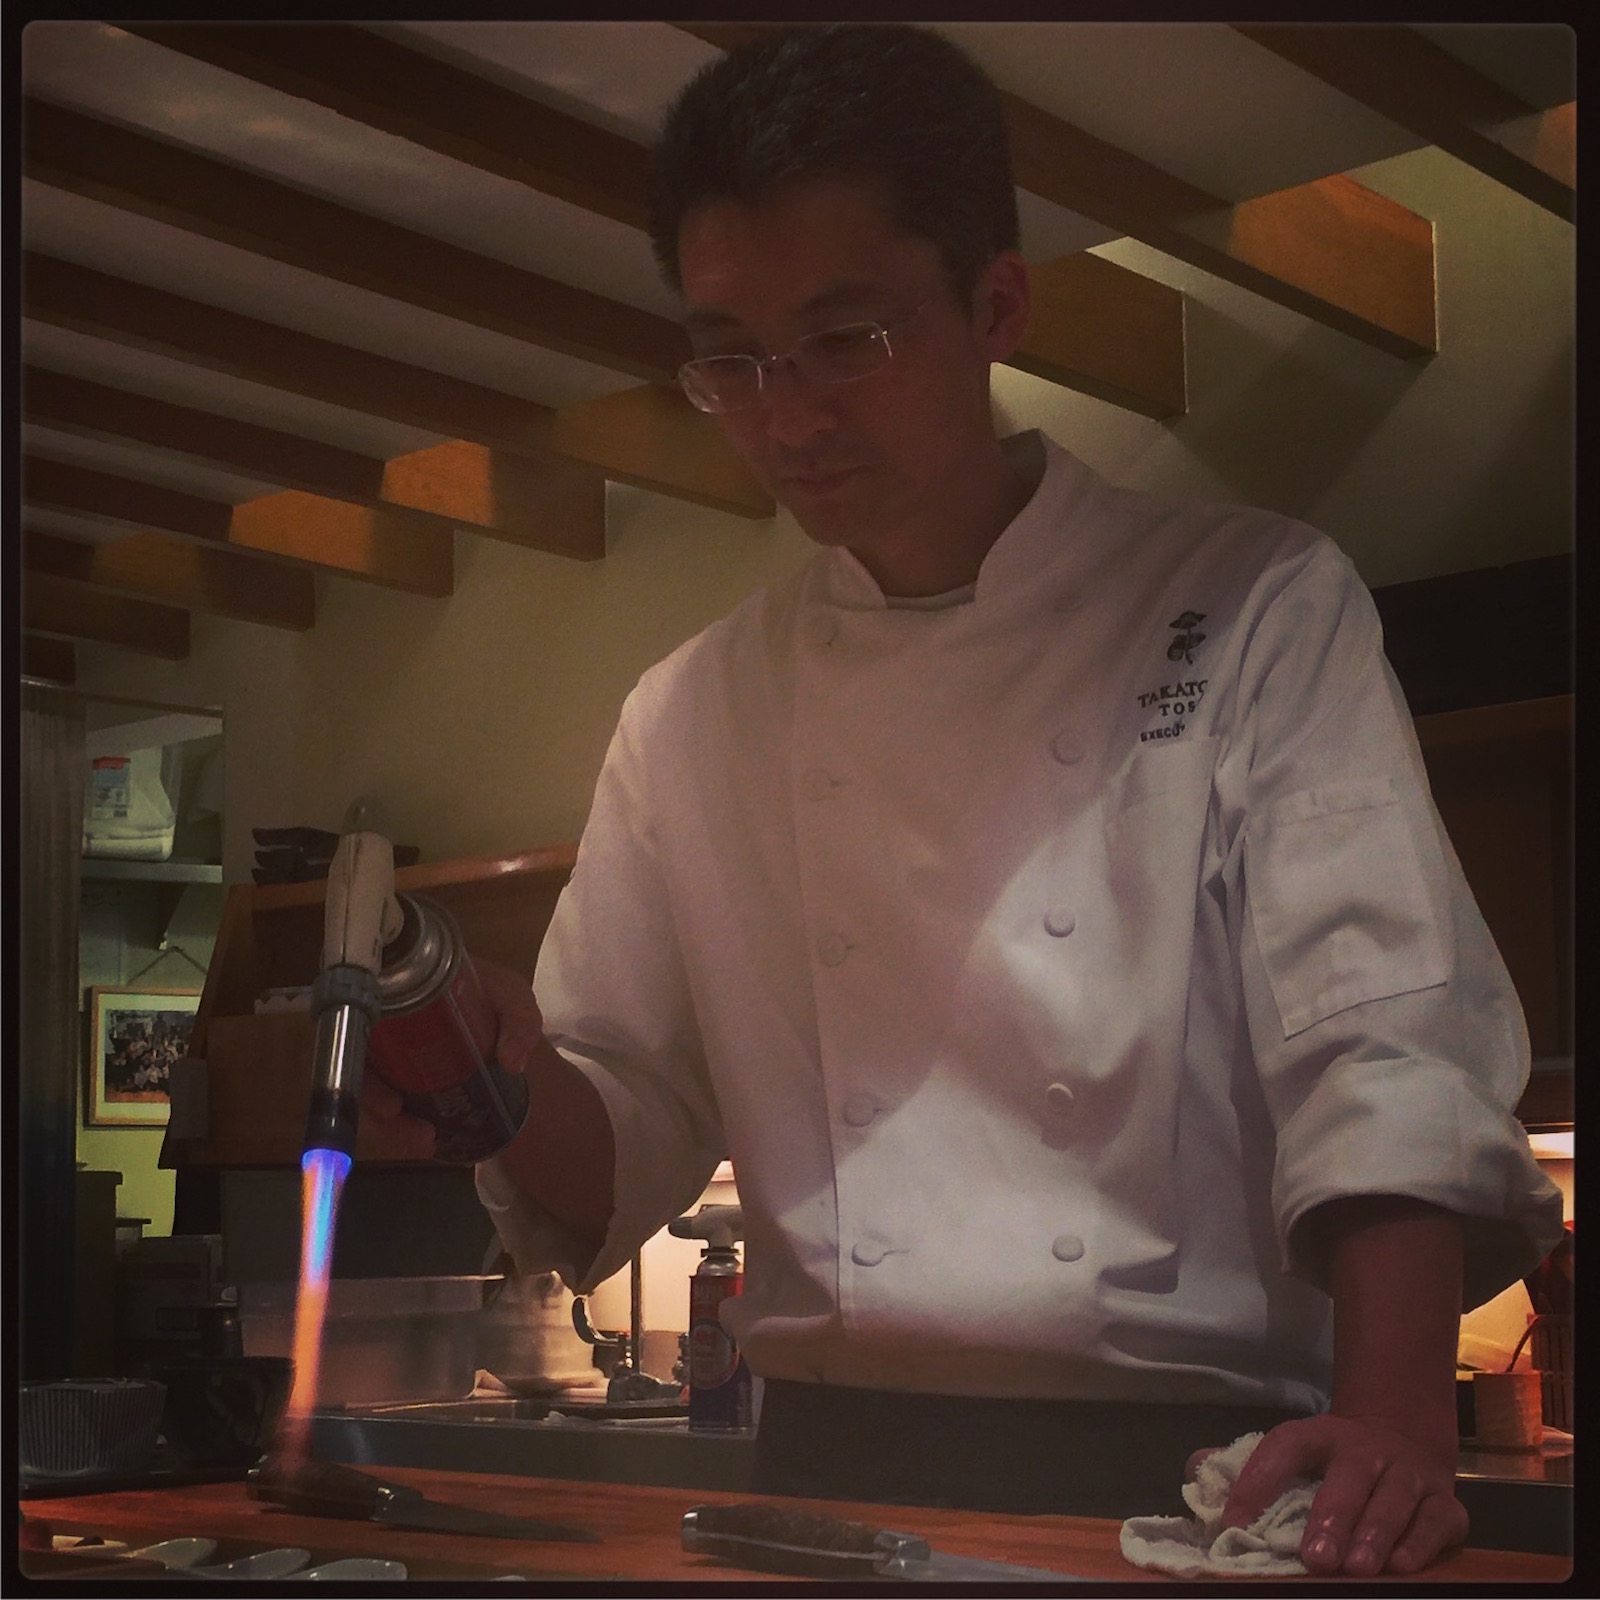 Sushi Ran omakase - Takatoshi Toshi preparing tarabagani